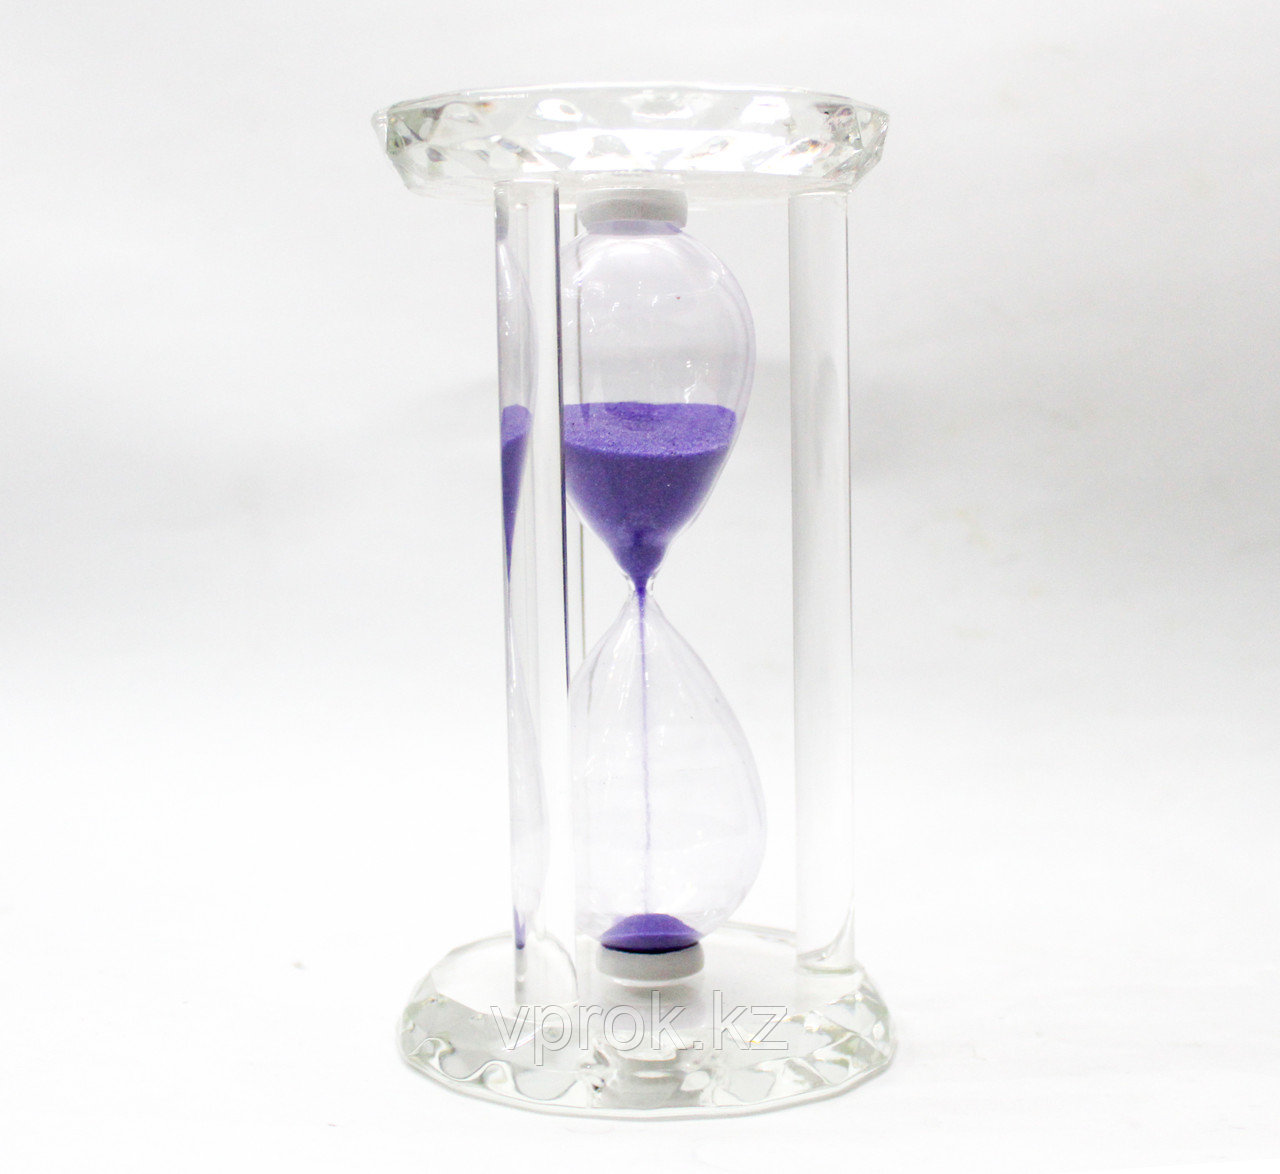 Песочные часы, фиолетовые,16*9 см, фото 1